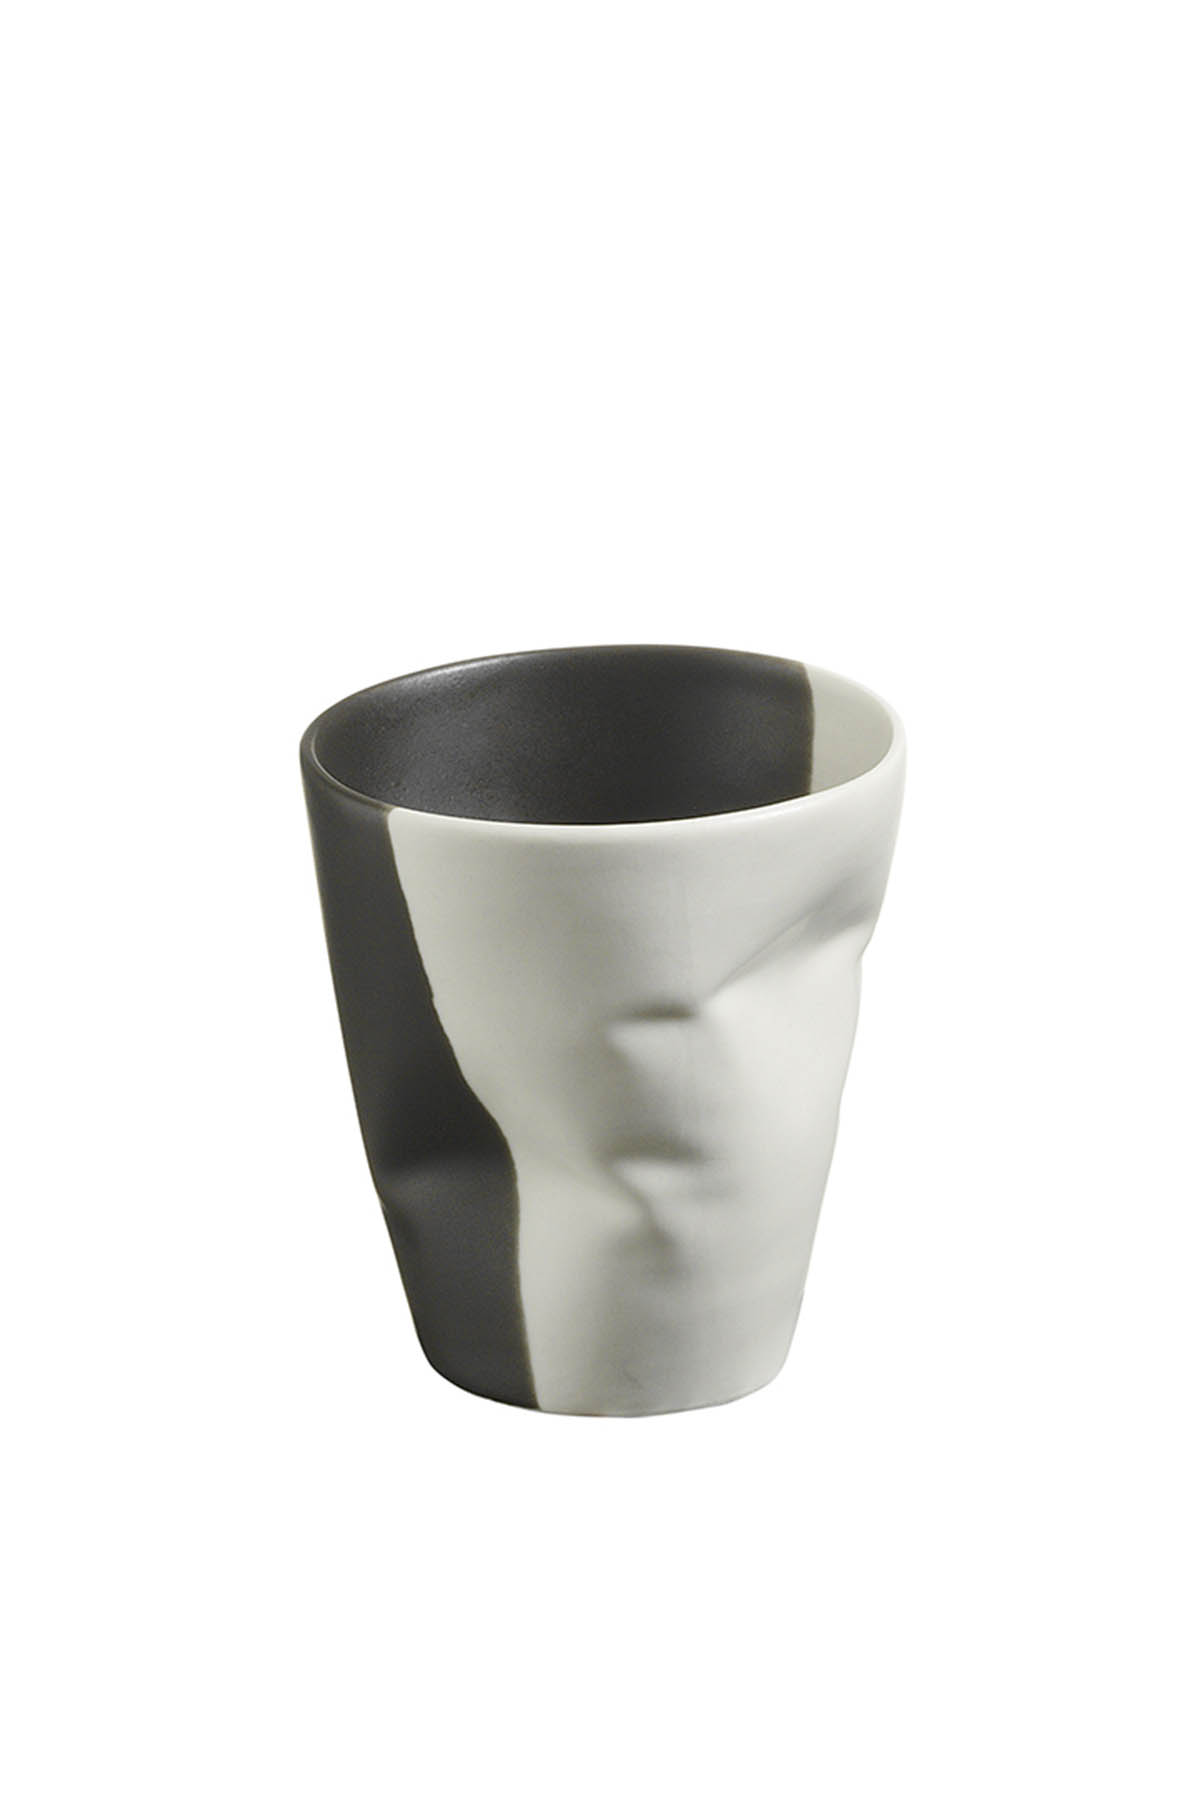 Kütahya Porselen Crash 2 Kişilik Espresso Kahve Seti 140 cc Krem/Siyah